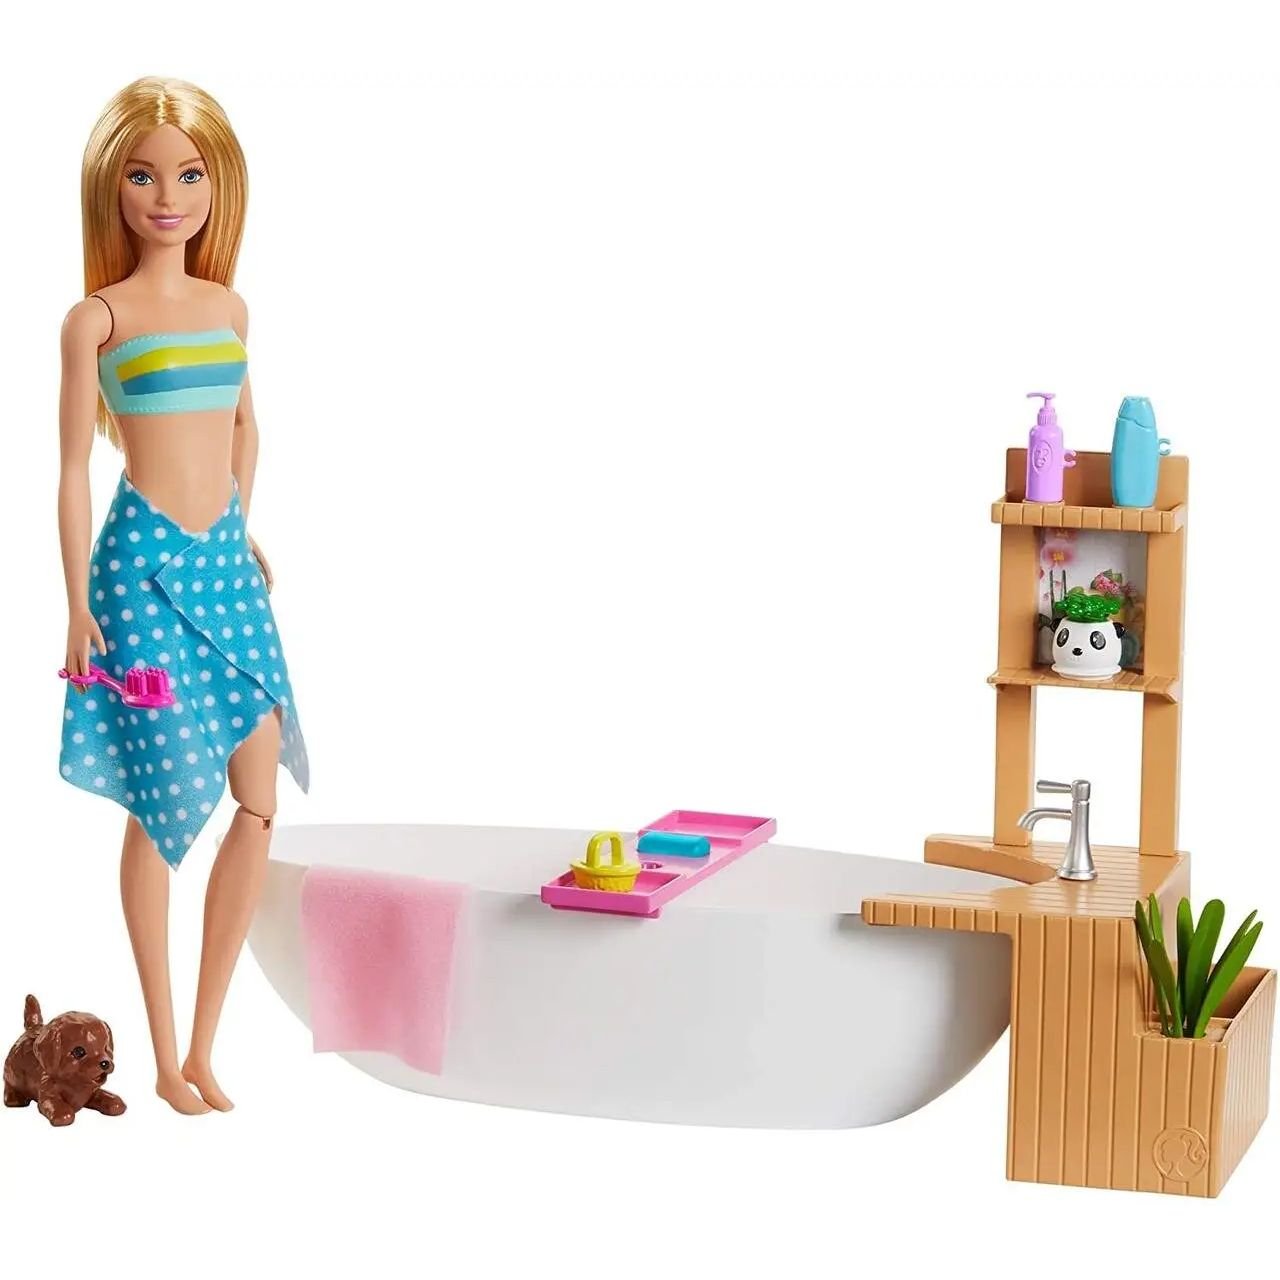 Игровой набор Barbie Fizzy Bath Doll&Playset, 28 см - фото 1